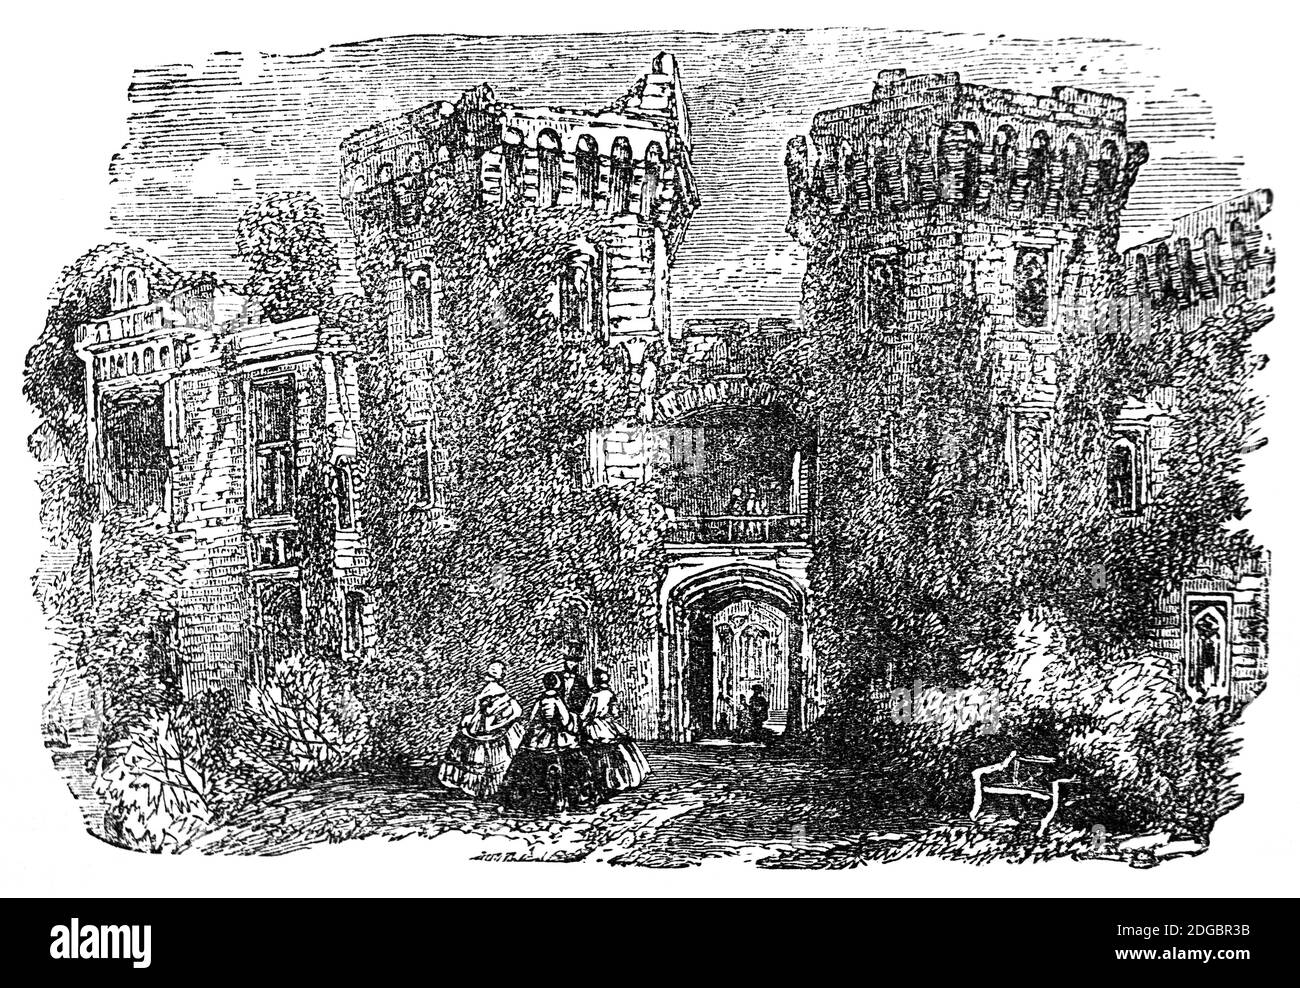 Vue du XIXe siècle sur le principal portail du château de Raglan, un château médiéval situé au nord du village de Raglan dans le Monbucshire, au sud du pays de Galles. Le château moderne date du XVIe siècle, lorsque les familles successives des Herberts et des Somersets créèrent un château fort luxueux. Pendant la guerre civile anglaise, le château a été tenu au nom de Charles Ier, mais pris par les forces parlementaires en 1646. Au lendemain, le château fut démantelé; après la restauration de Charles II, les Somersets déclinèrent pour restaurer le château et il devint une ruine romantique. Banque D'Images